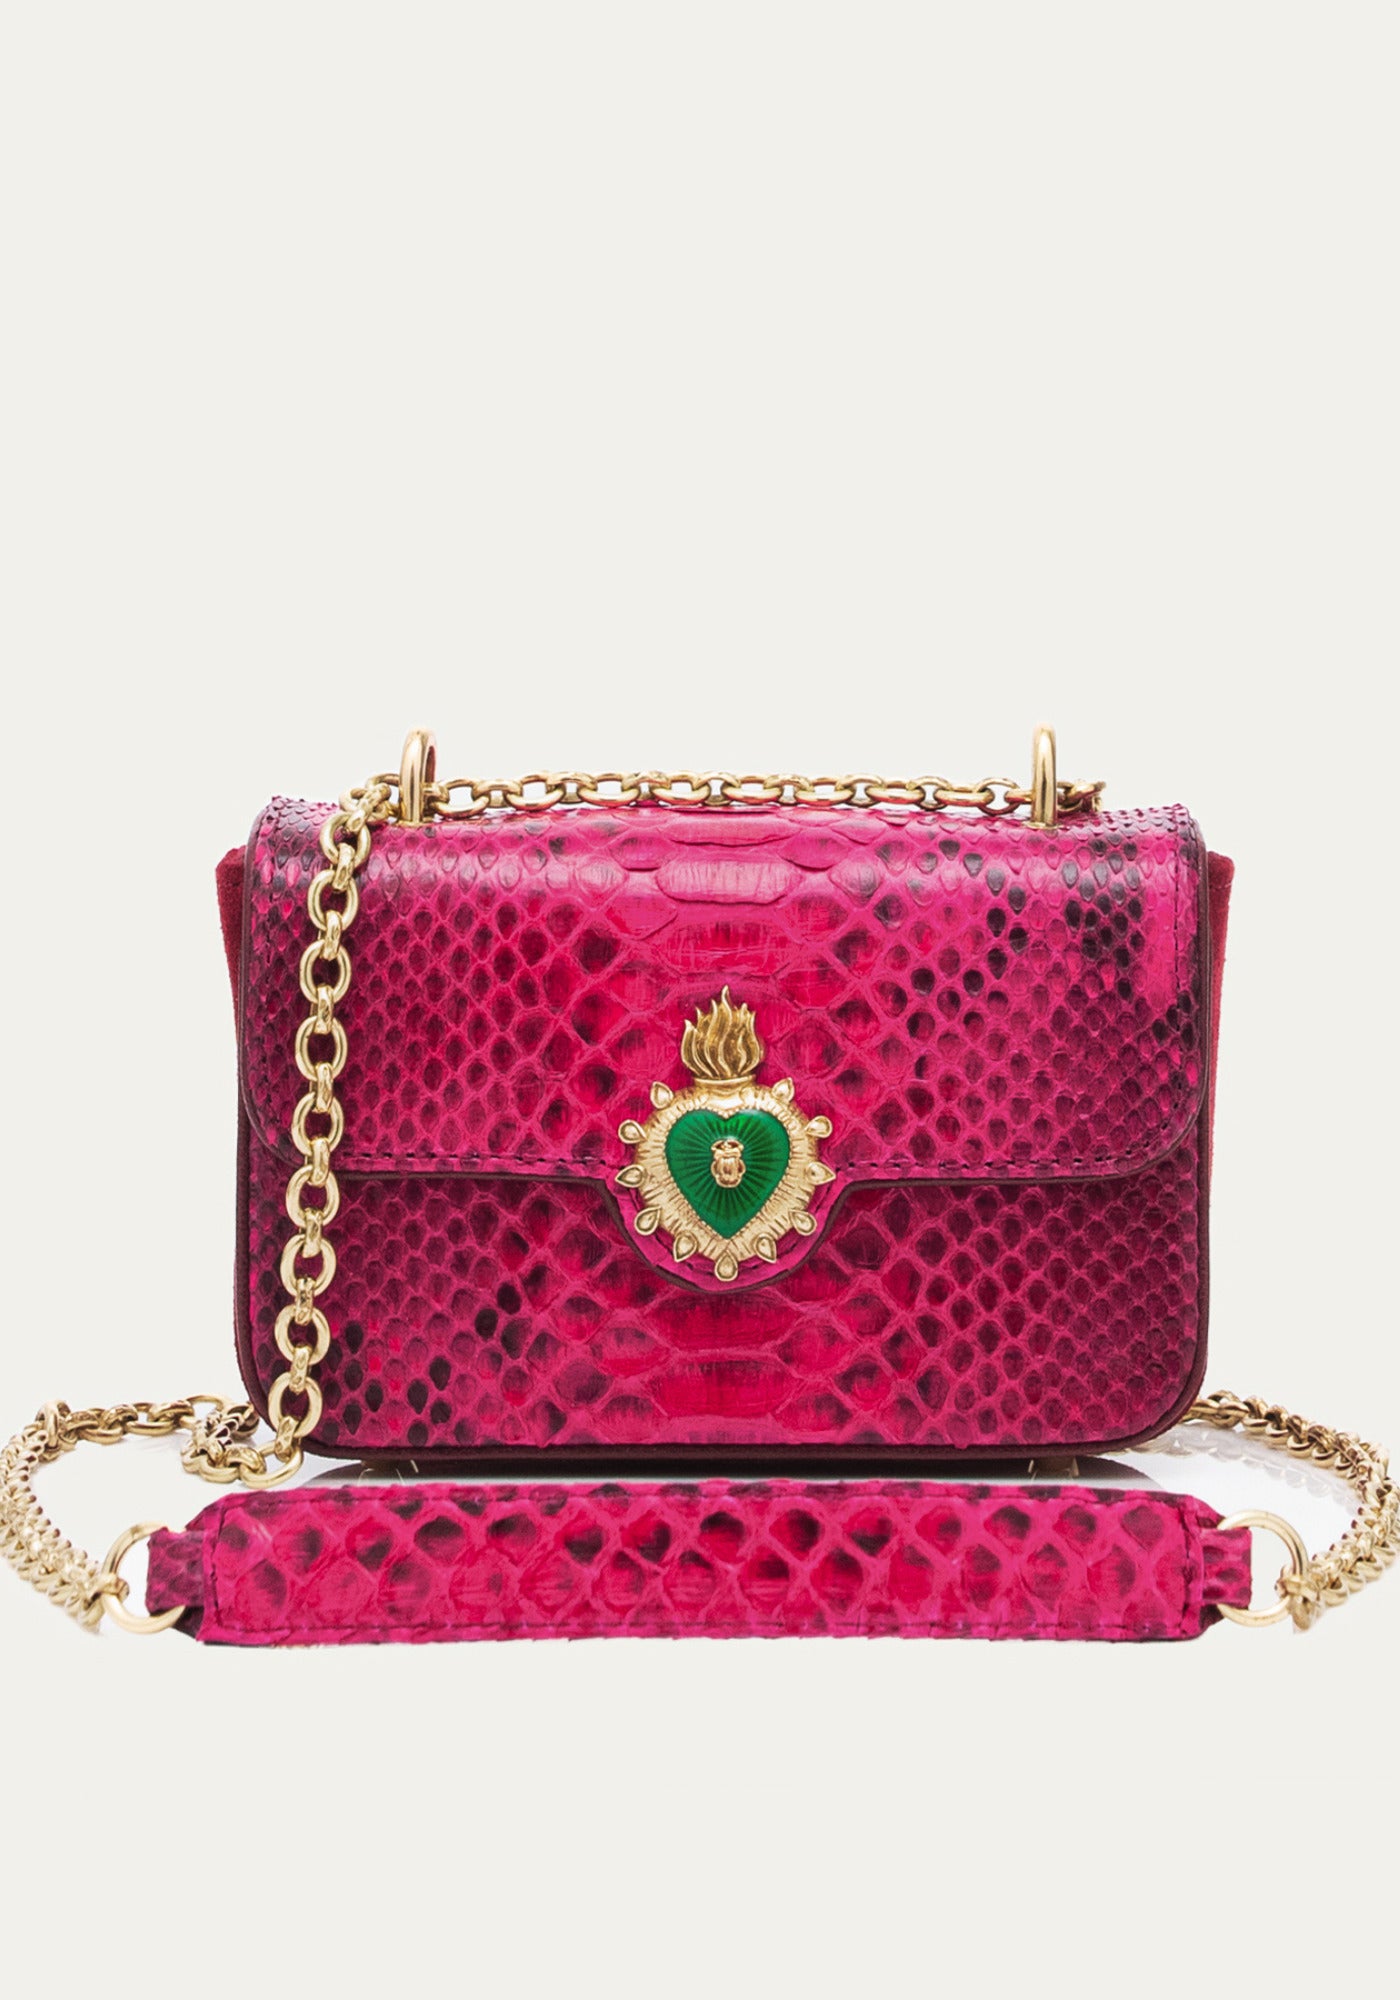 Le sac mini Ava celosia rose pour femme de chez Claris Virot